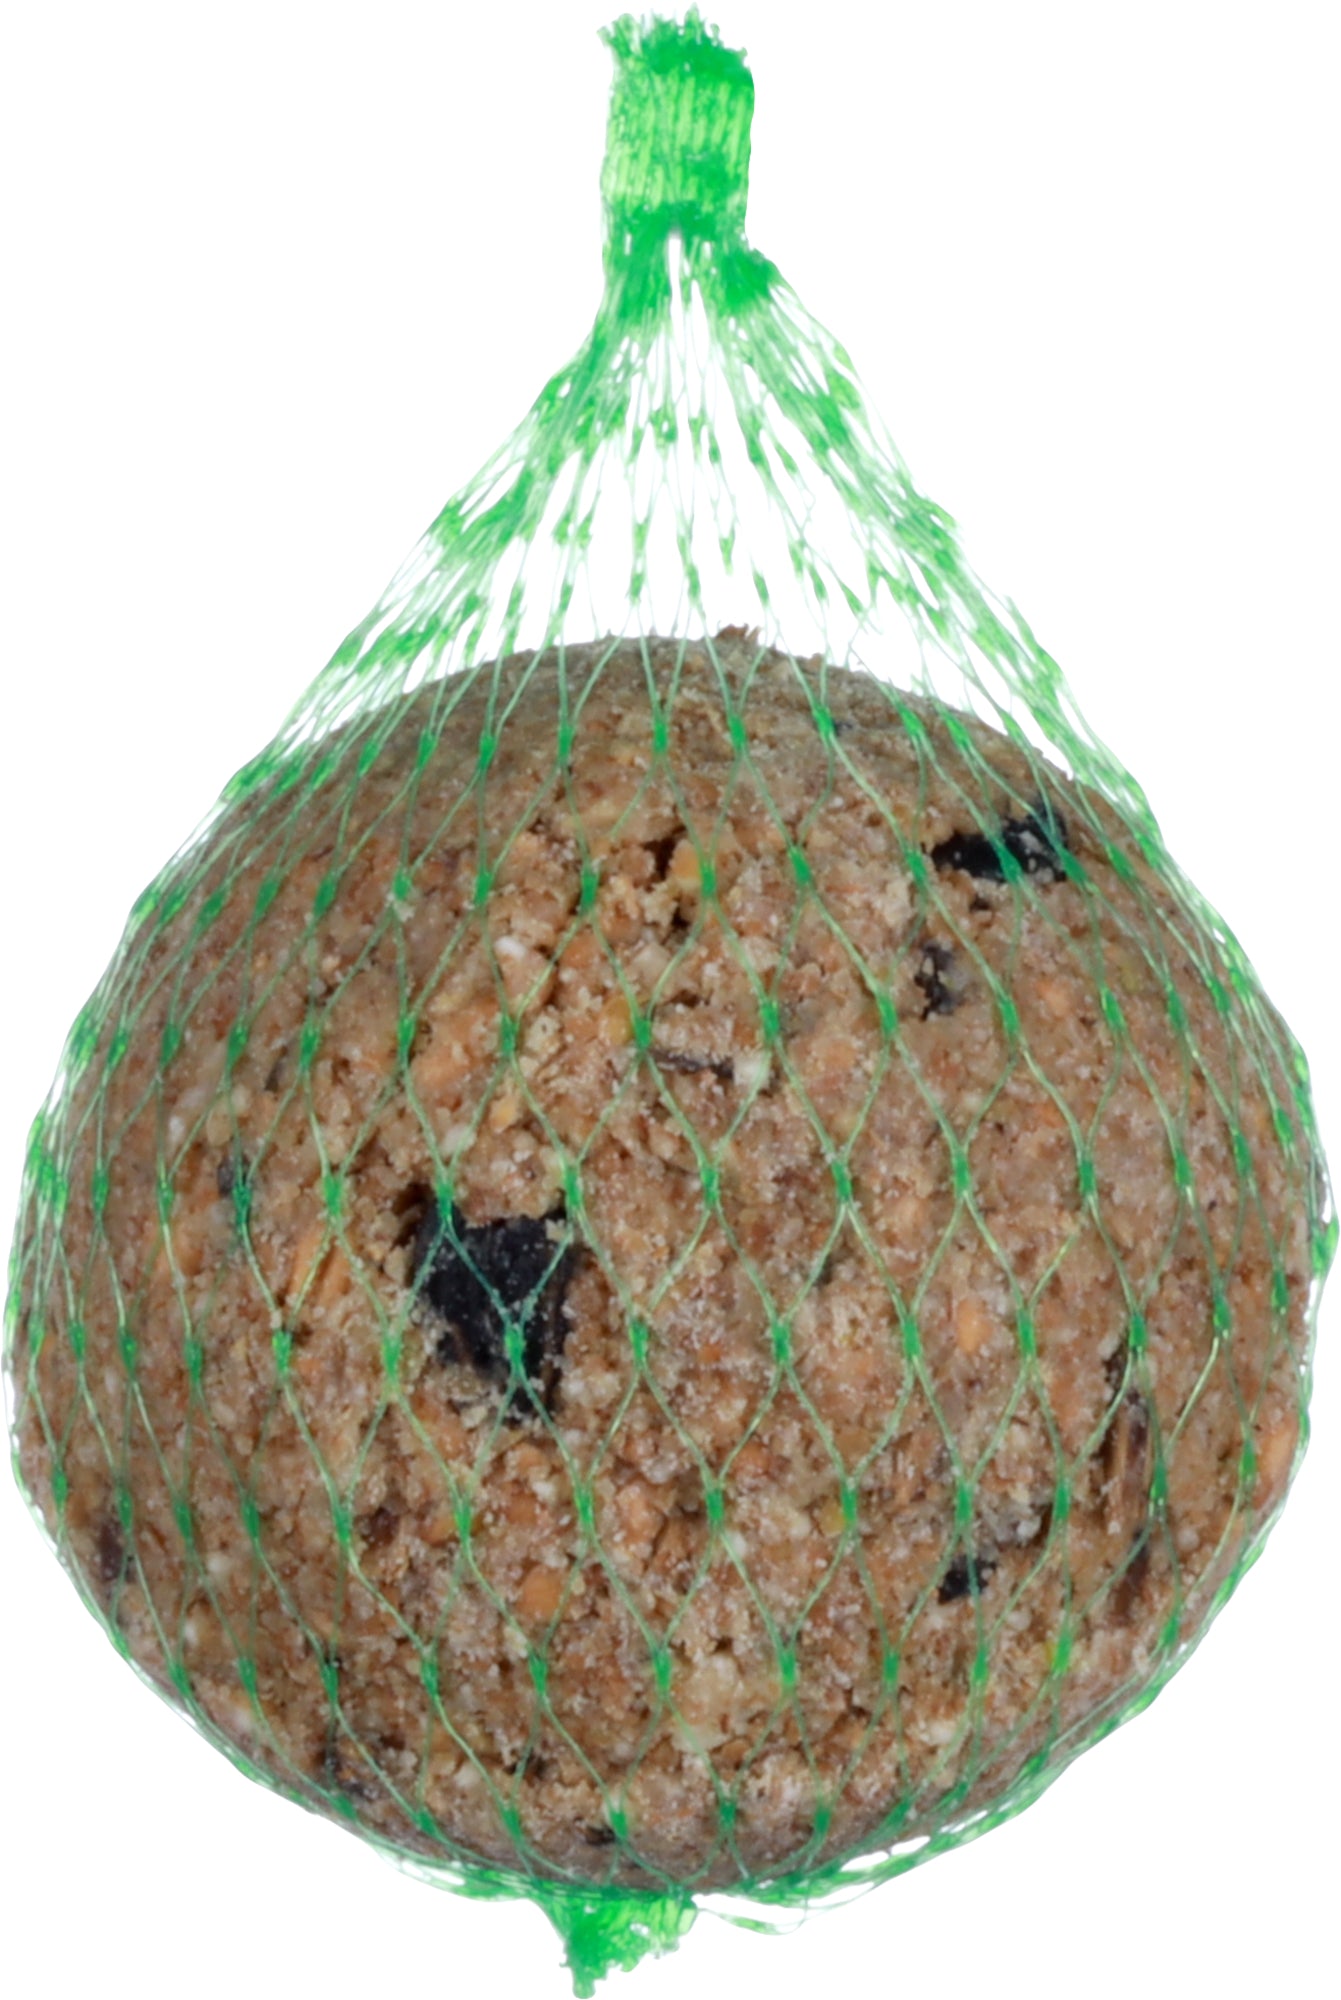 Vogel Vetbollen met Net I Voordeelpak 100 stuks - Huisdierplezier